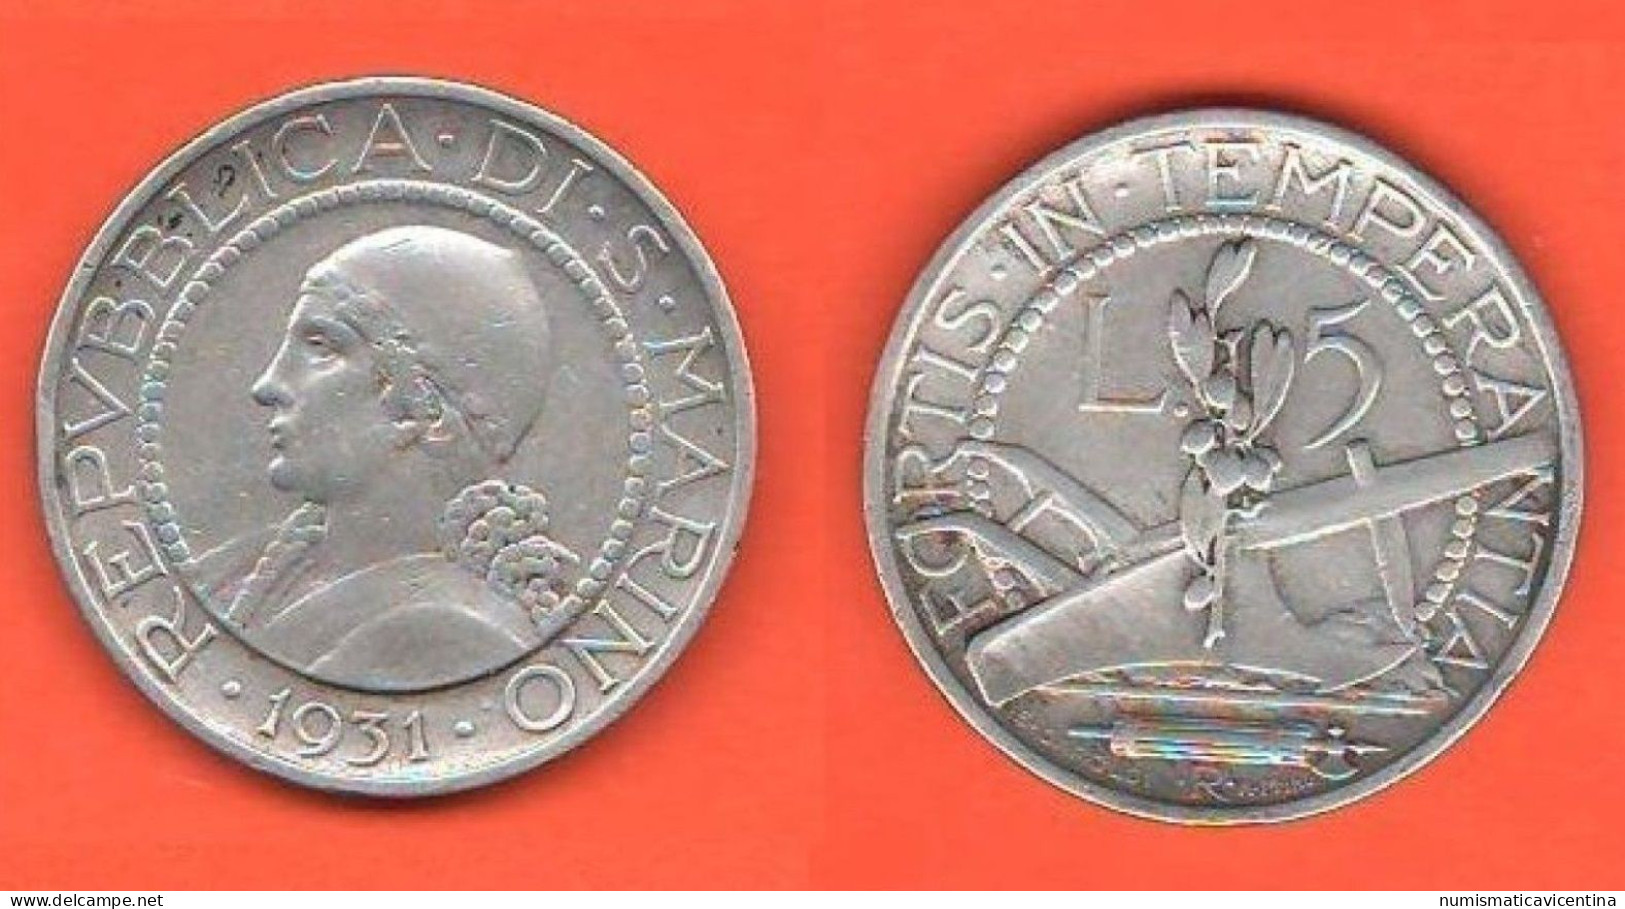 San Marino 5 Lire 1931 Saint Marin  ∇9 Old Coinage Silver Coin - Saint-Marin